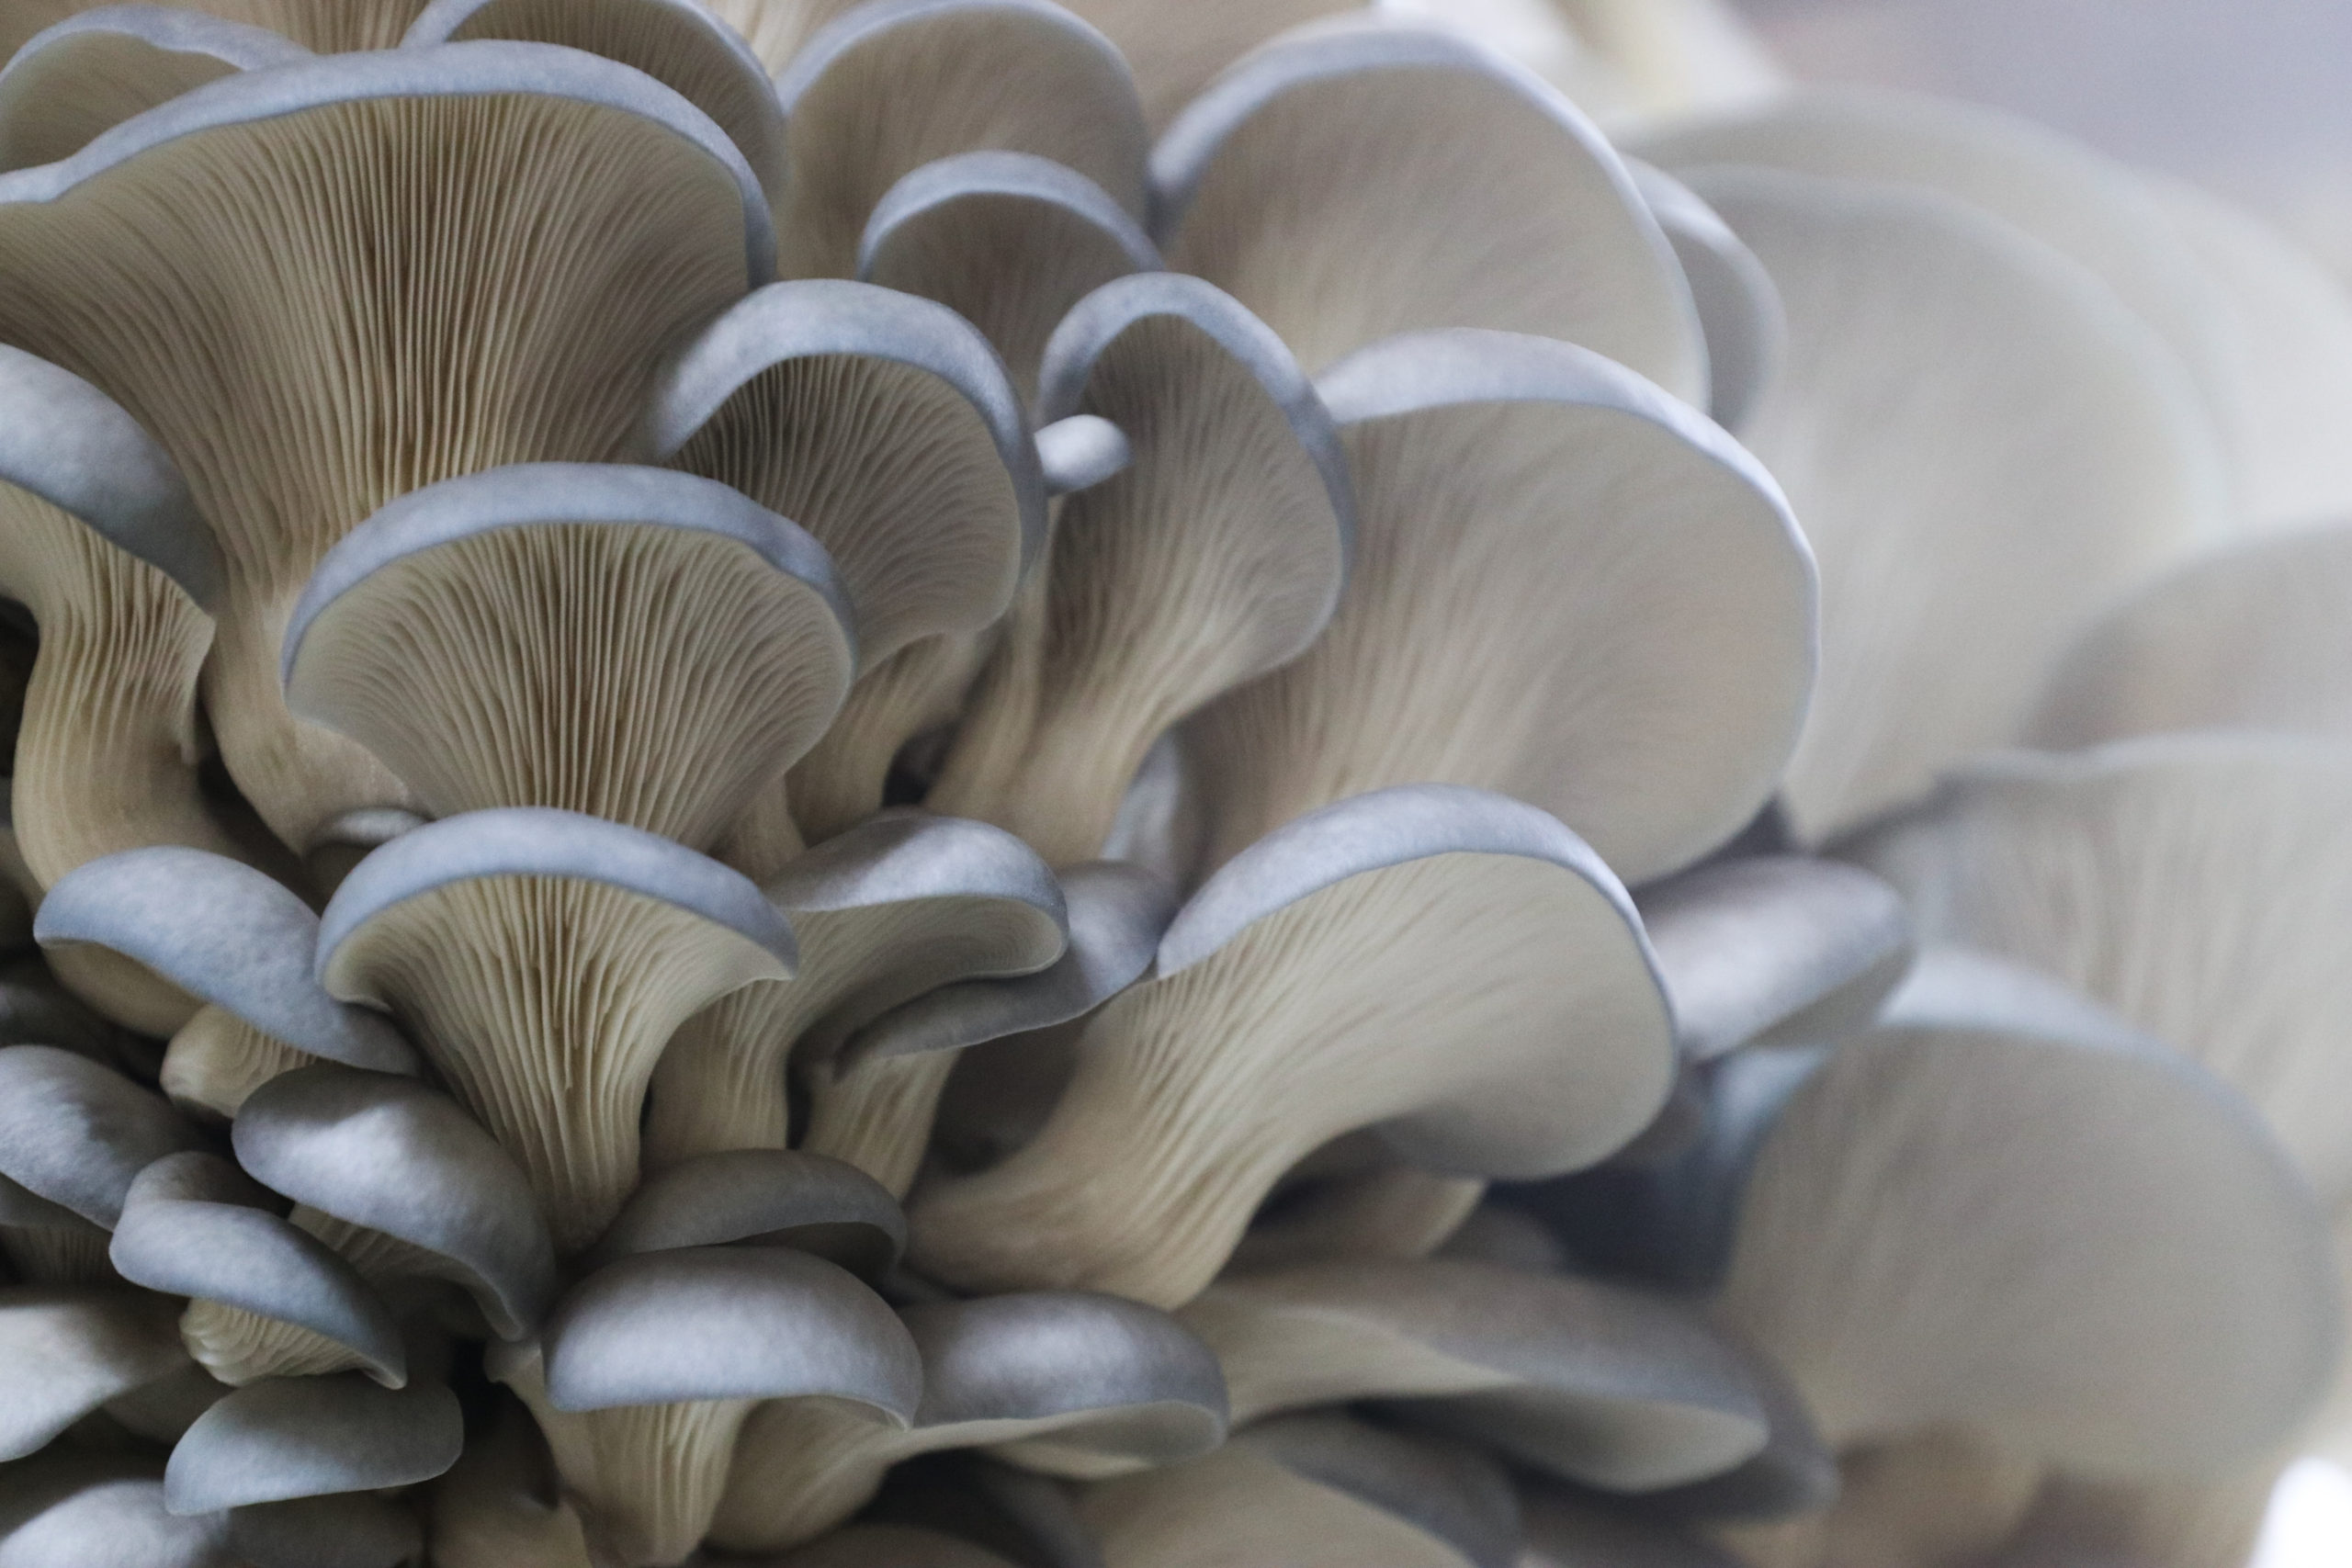 Как выращивать грибы вешенки в мешках - 1 октября 2022 - дом и участок своими руками
как выращивать грибы вешенки в мешках